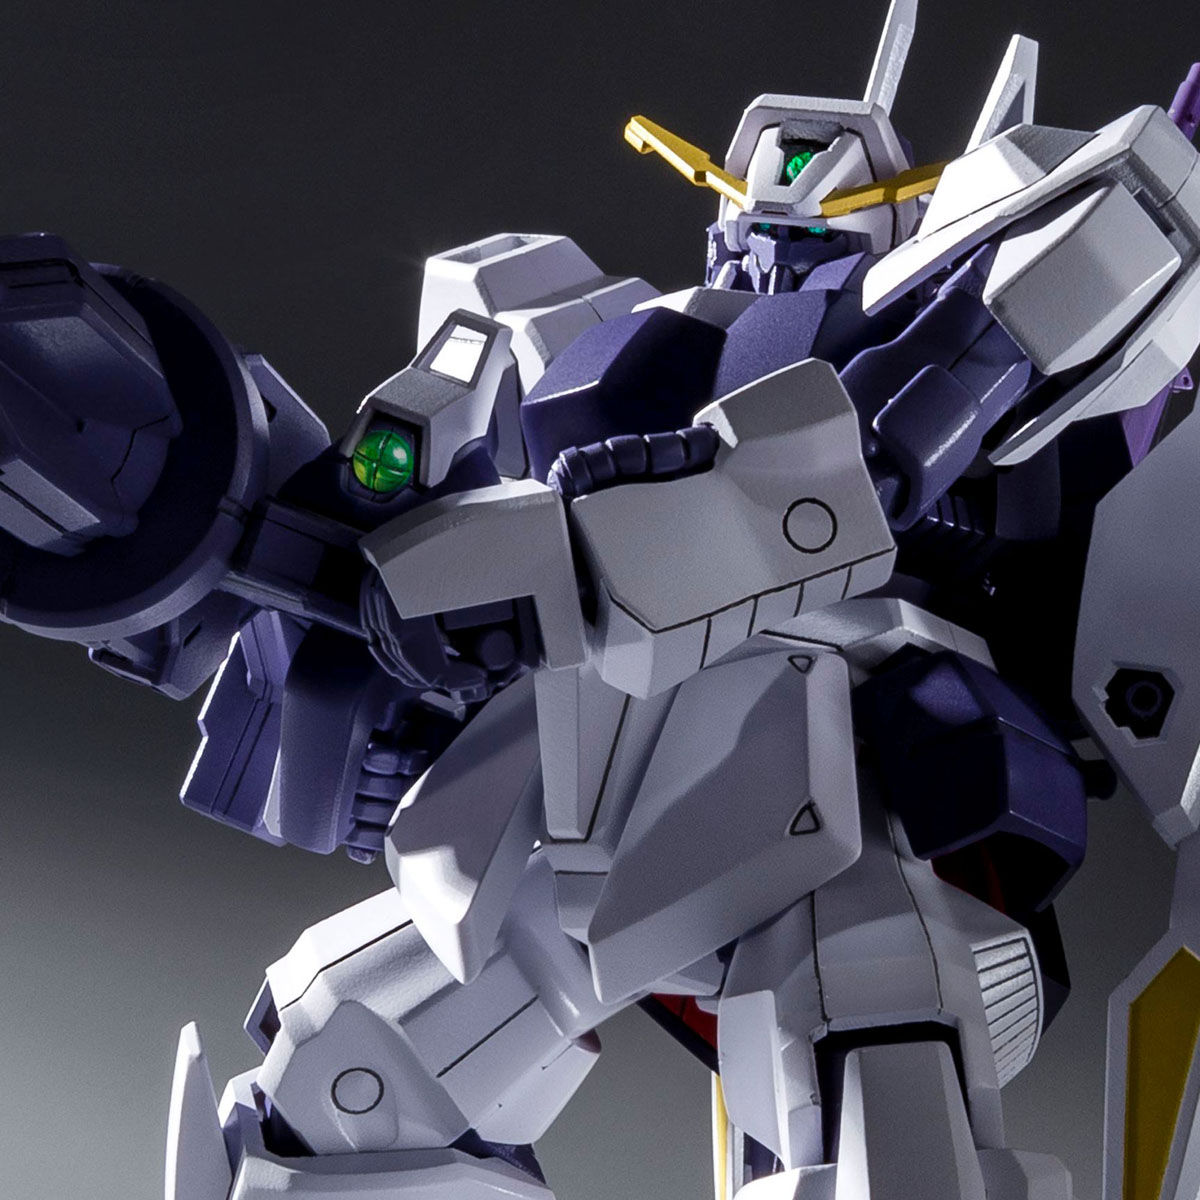 HGBD 1/144 Build Gamma Gundam